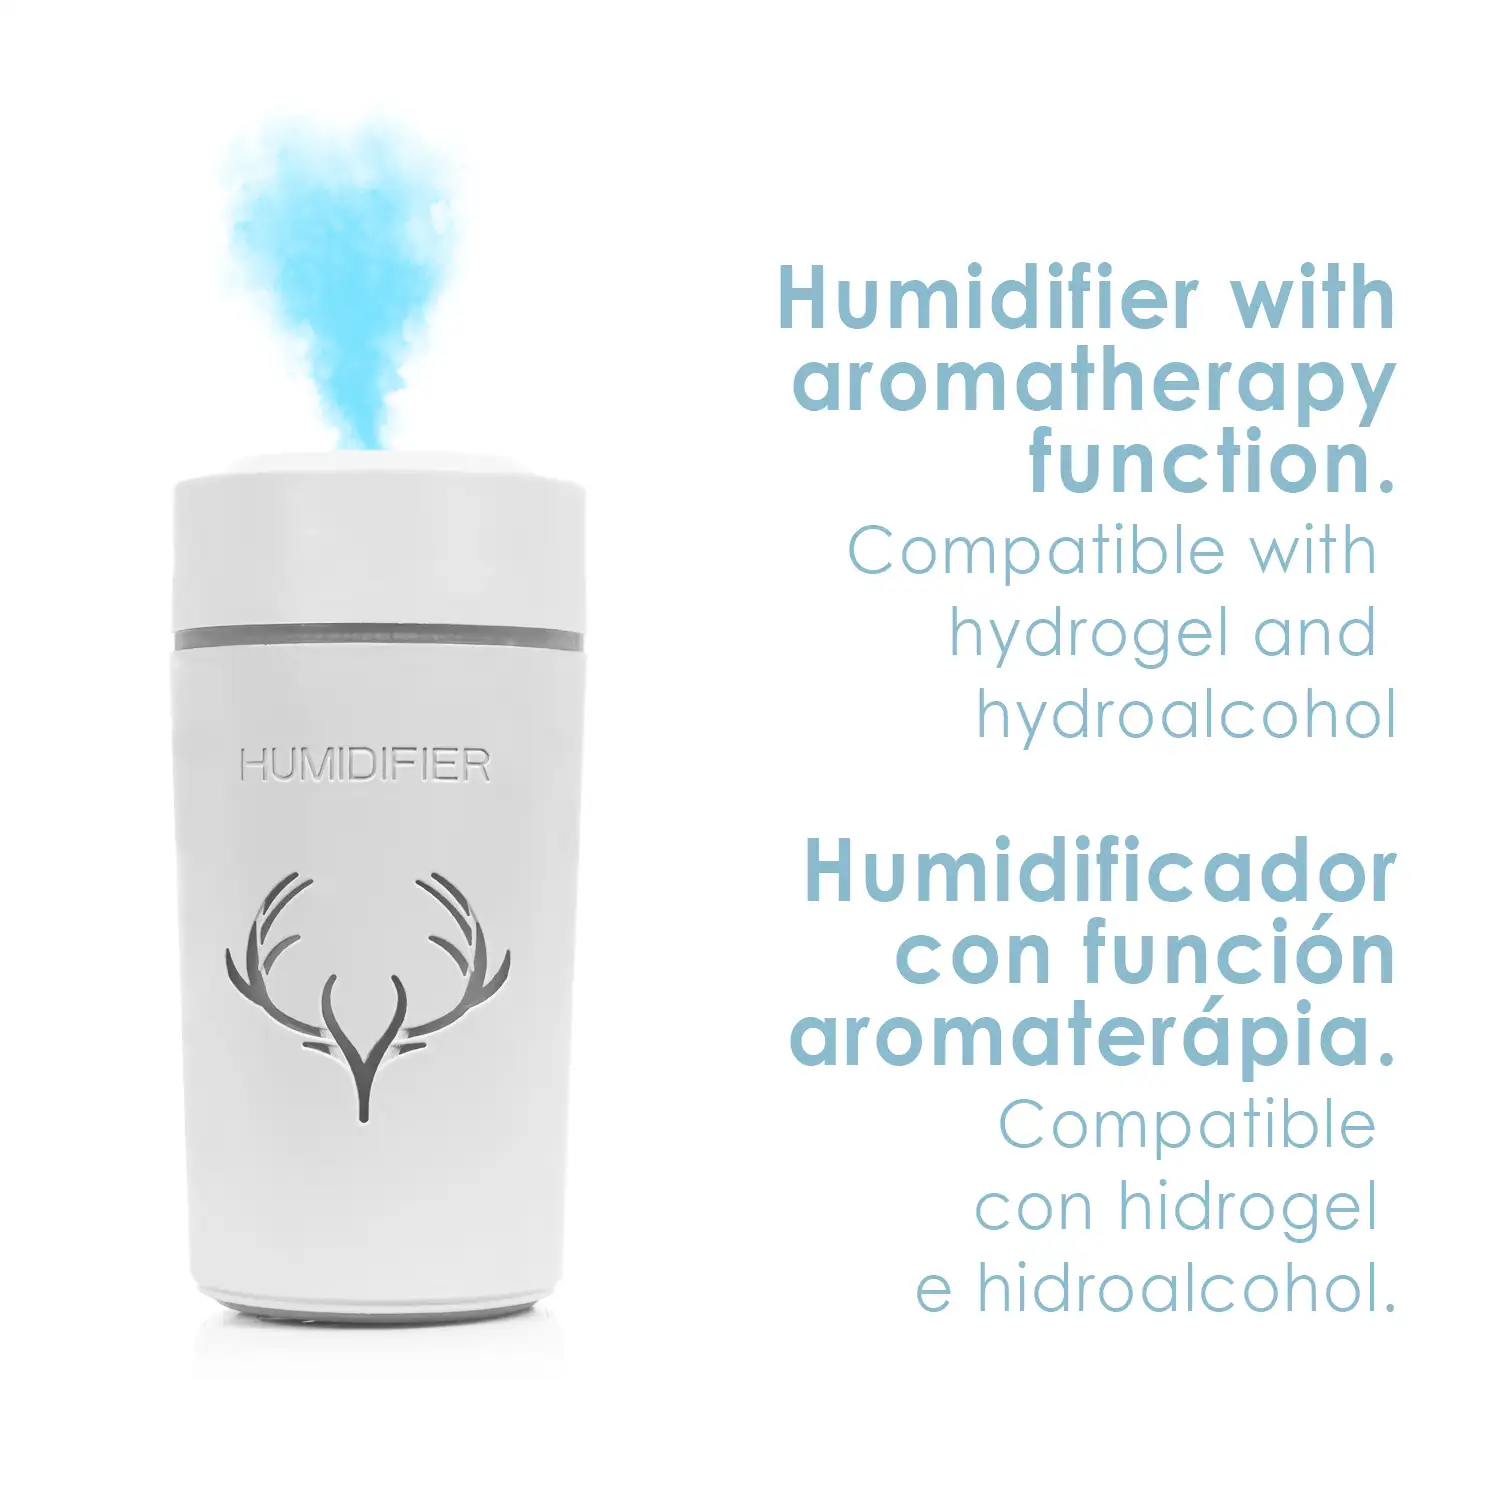 Nebulizador esterilizador multifunción (admite hidroalcohol) 500 ml. Humidificador.